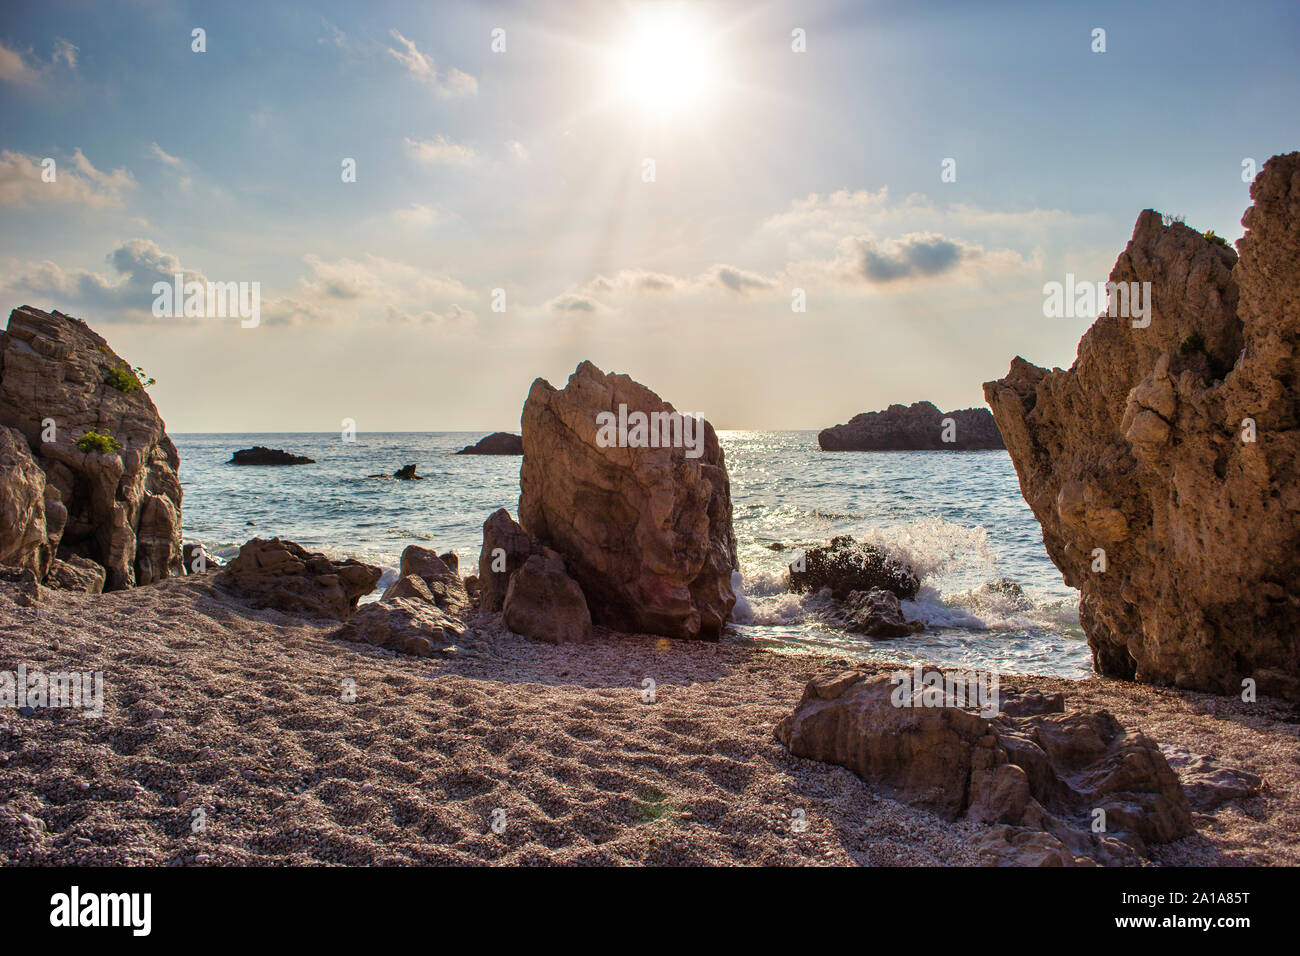 Beautiful seascape, Kathisma beach, west coast of Lefkada island, Greece. Stock Photo